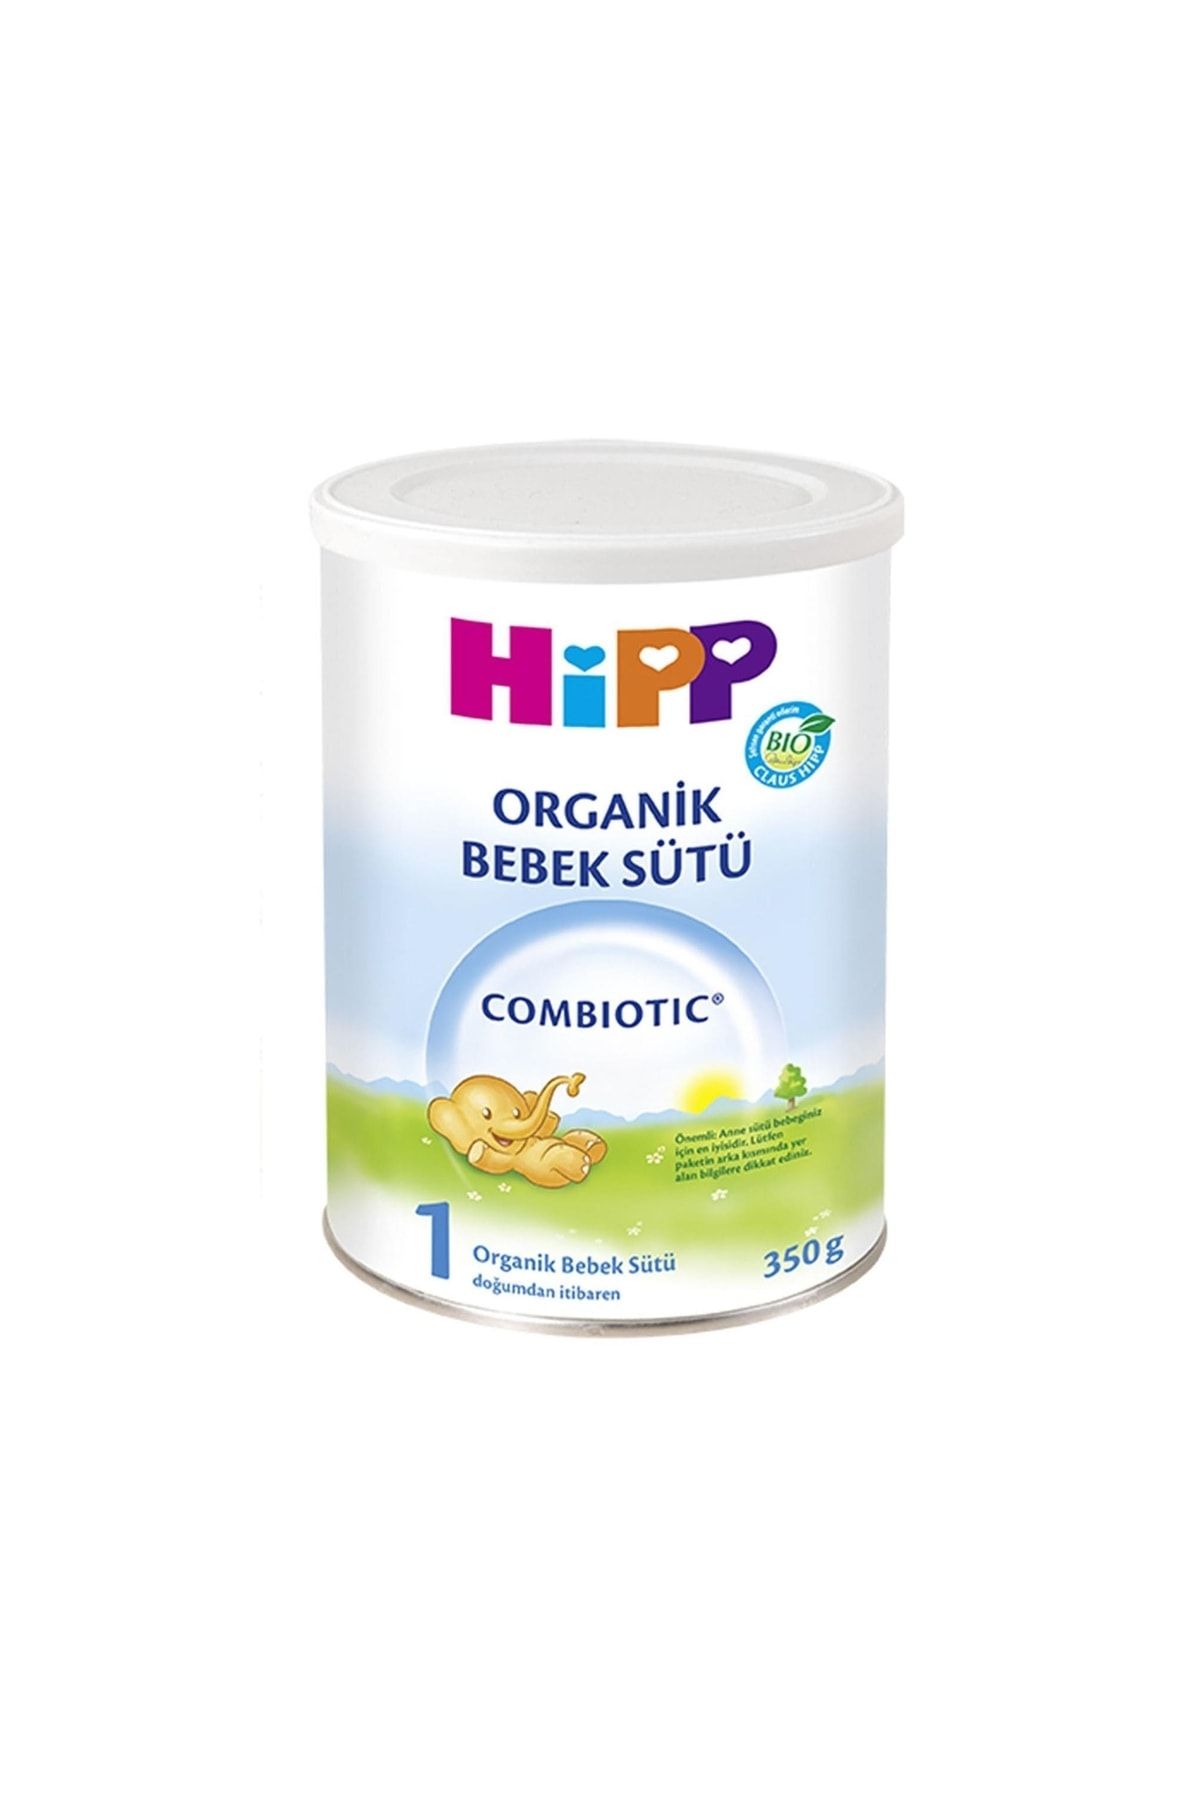 Hipp Boze 1 Organik Combiotic Bebek Sütü 350 Gr